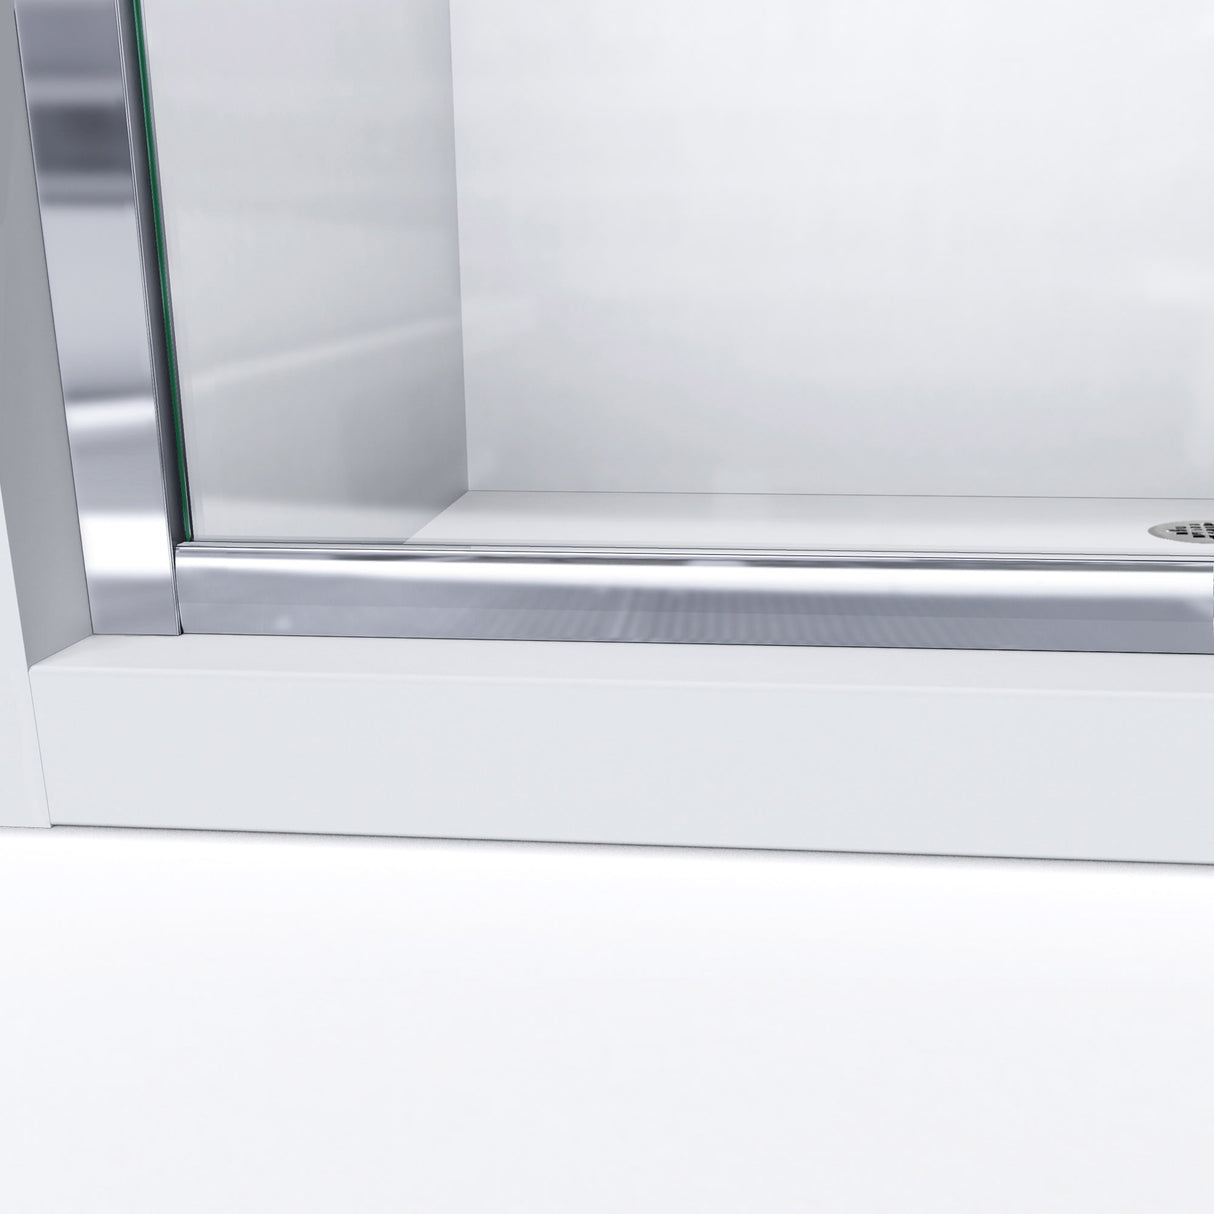 DreamLine Infinity-Z 56-60 in. W x 72 in. H Semi-Frameless Sliding Shower Door, Clear Glass in Oil Rubbed Bronze